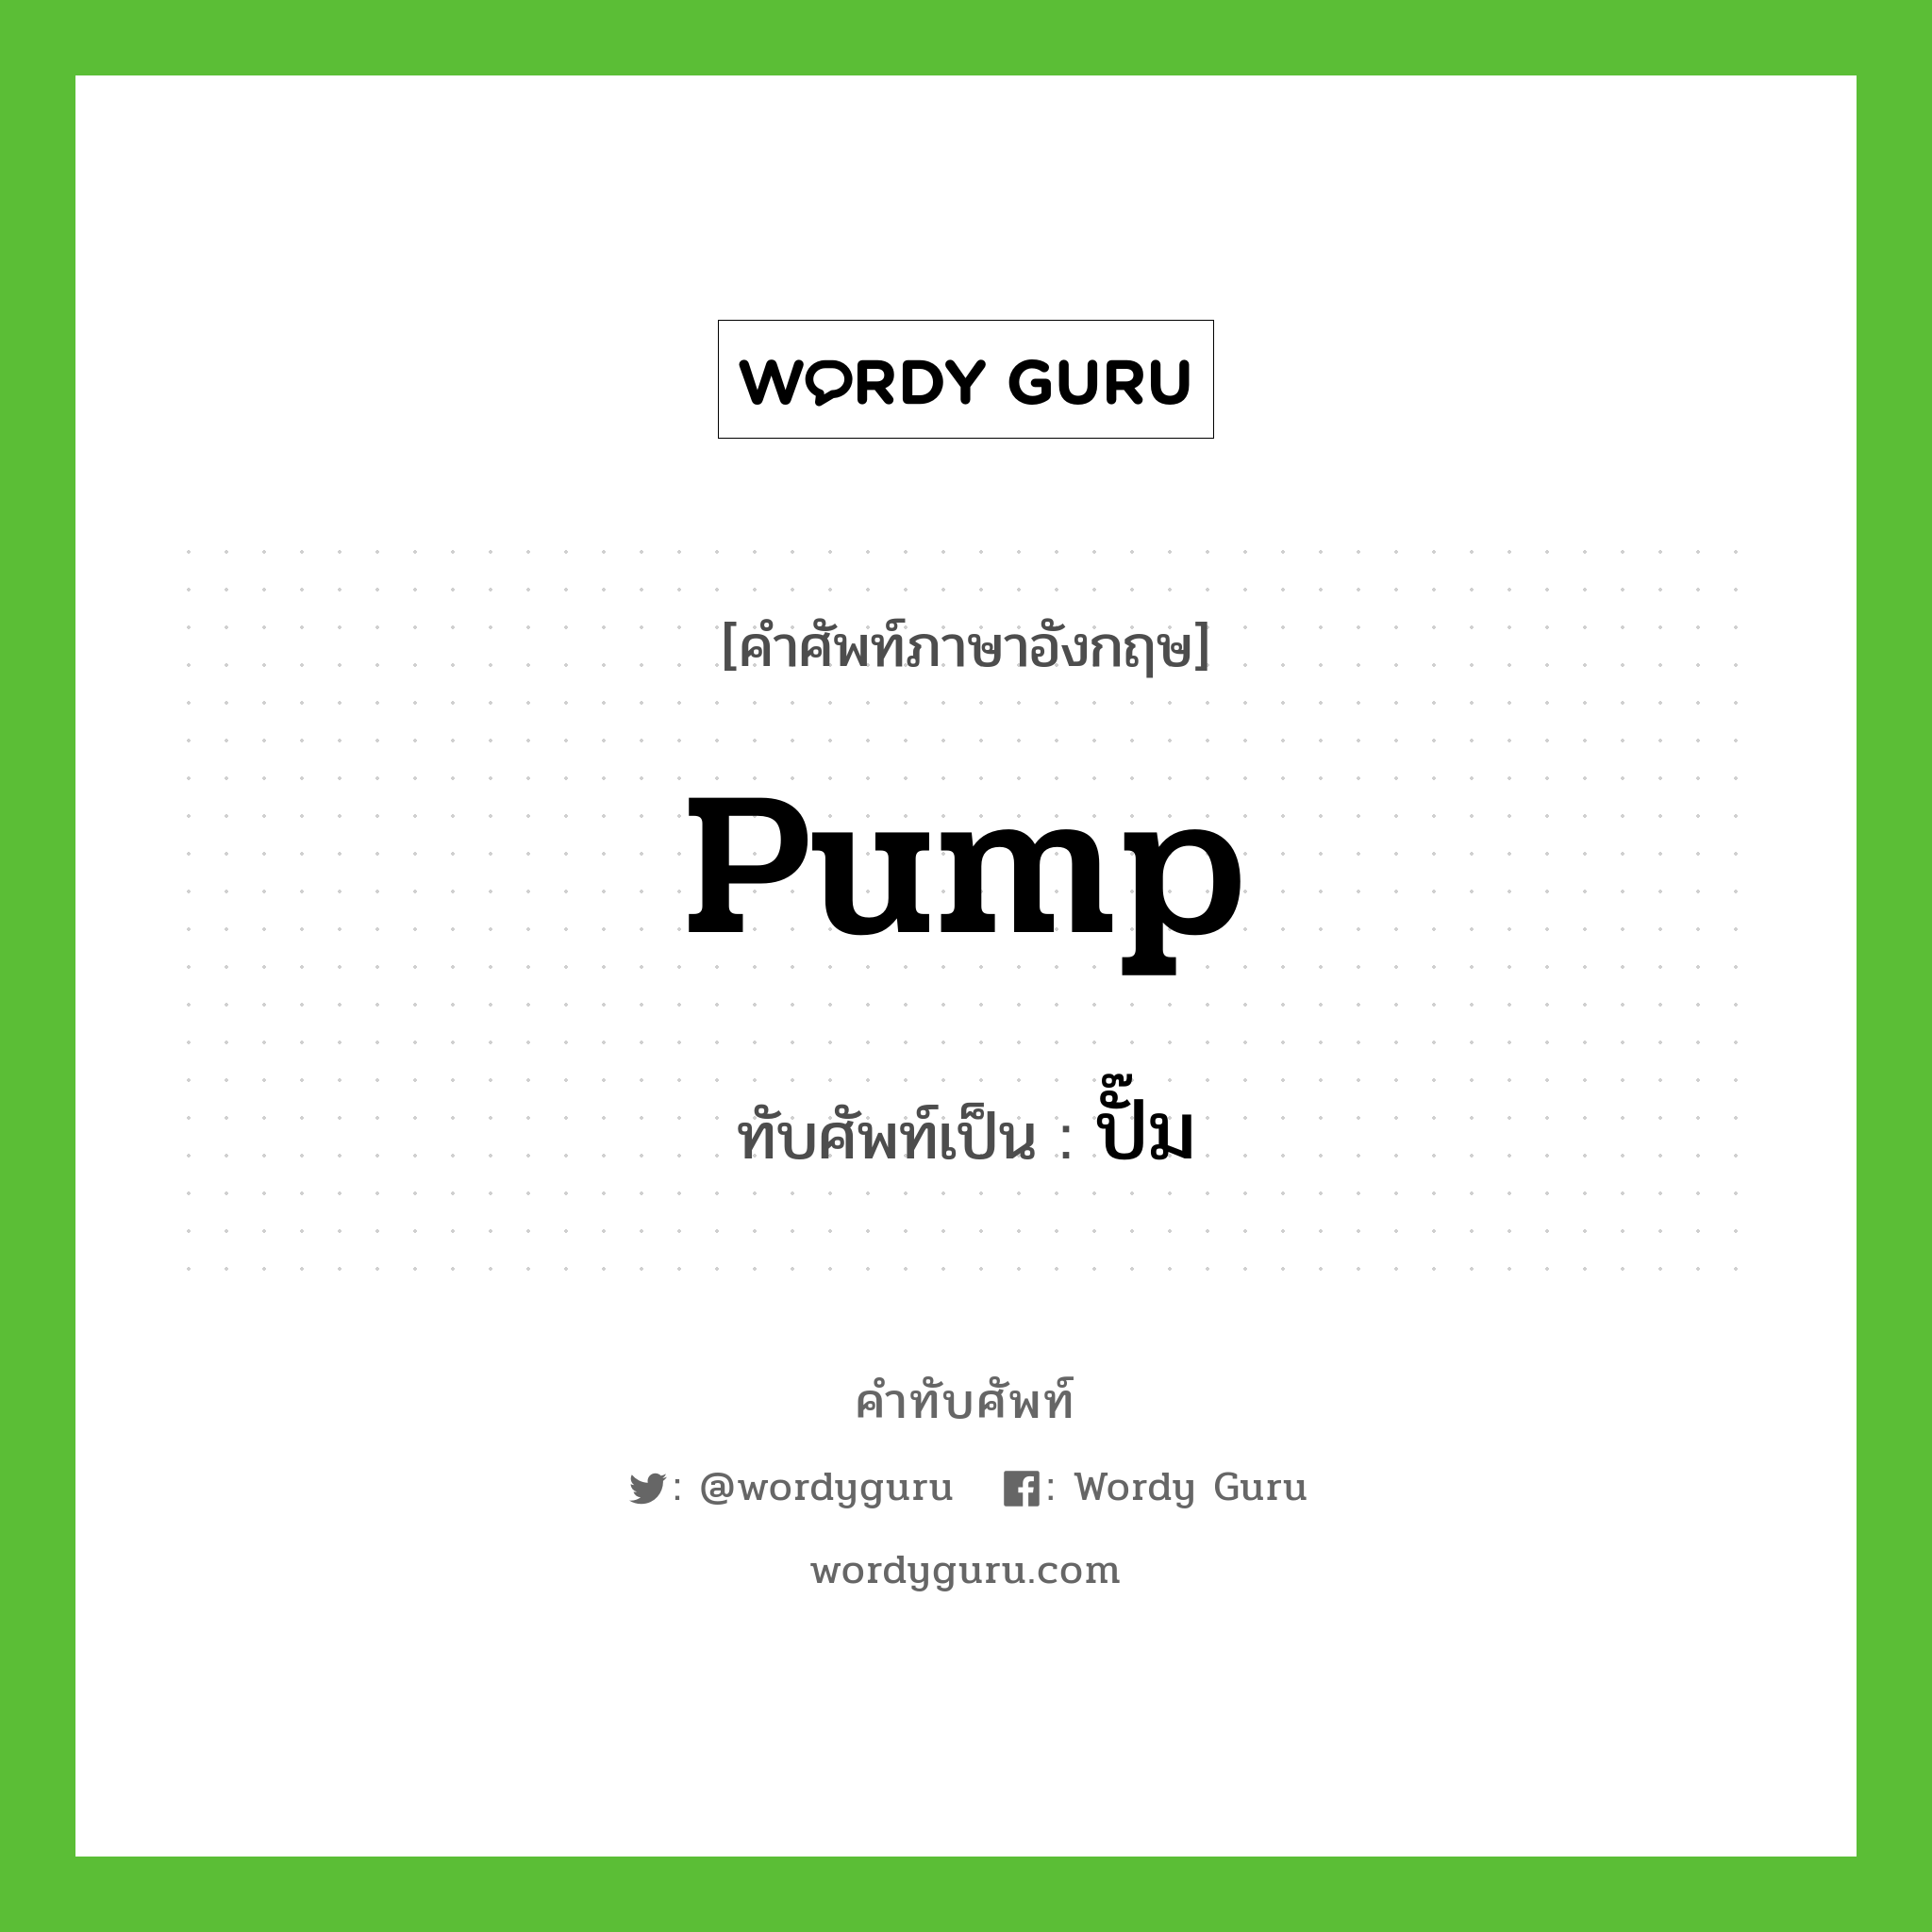 pump เขียนเป็นคำไทยว่าอะไร?, คำศัพท์ภาษาอังกฤษ pump ทับศัพท์เป็น ปั๊ม